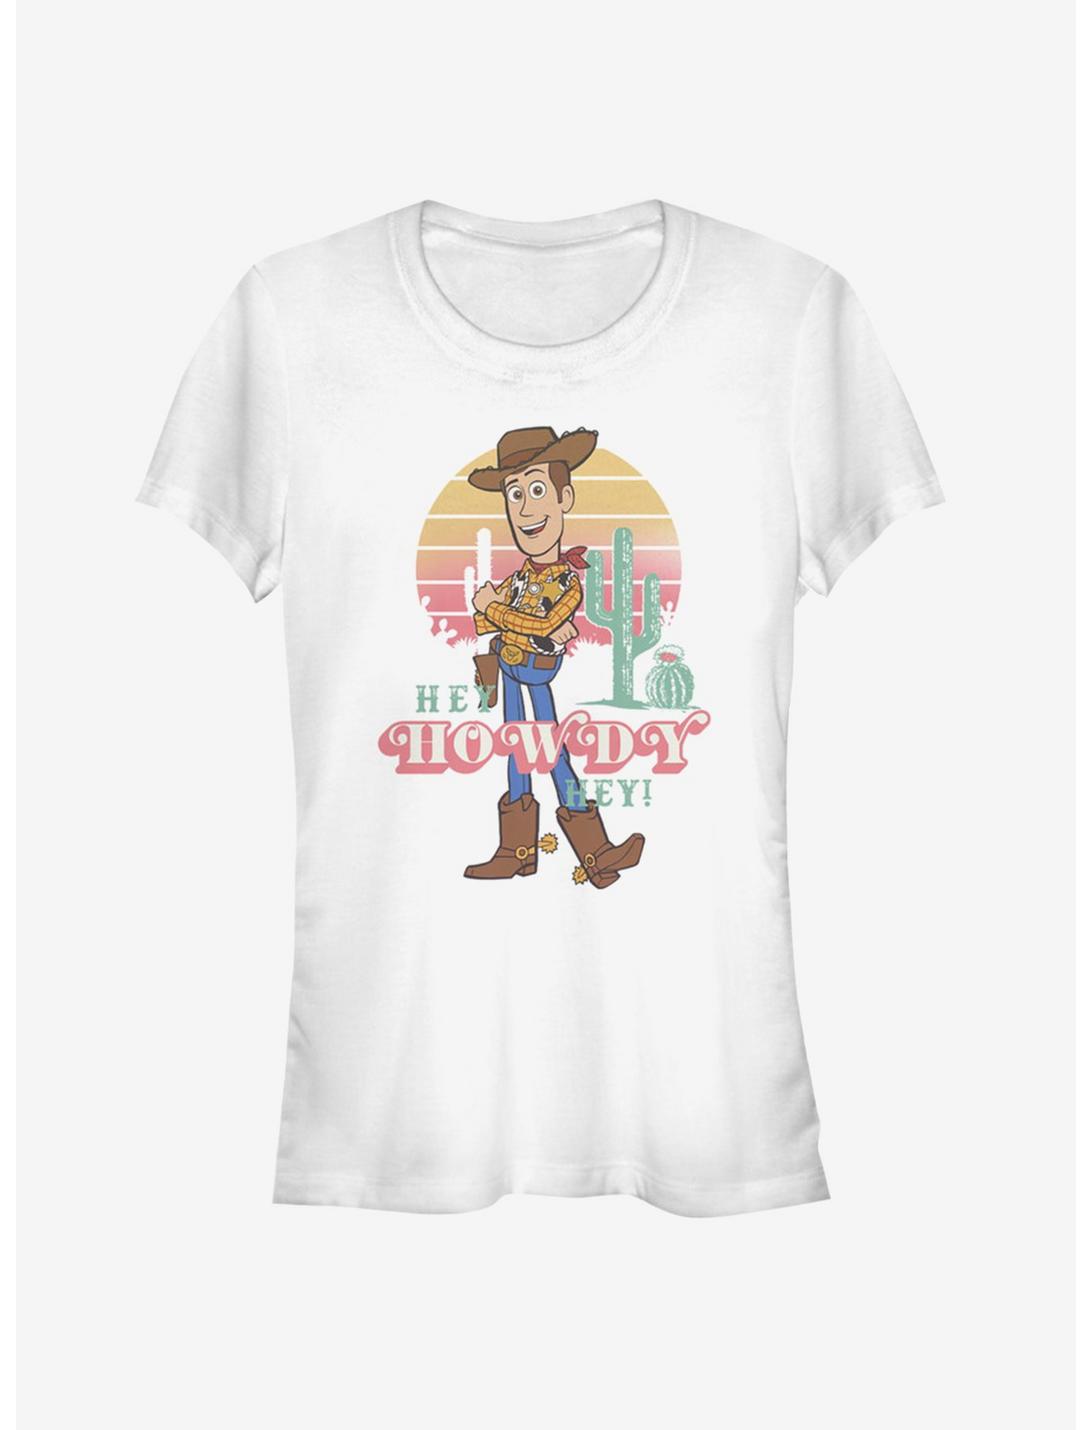 Disney Pixar Toy Story 4 Hey Howdy Girls T-Shirt, WHITE, hi-res